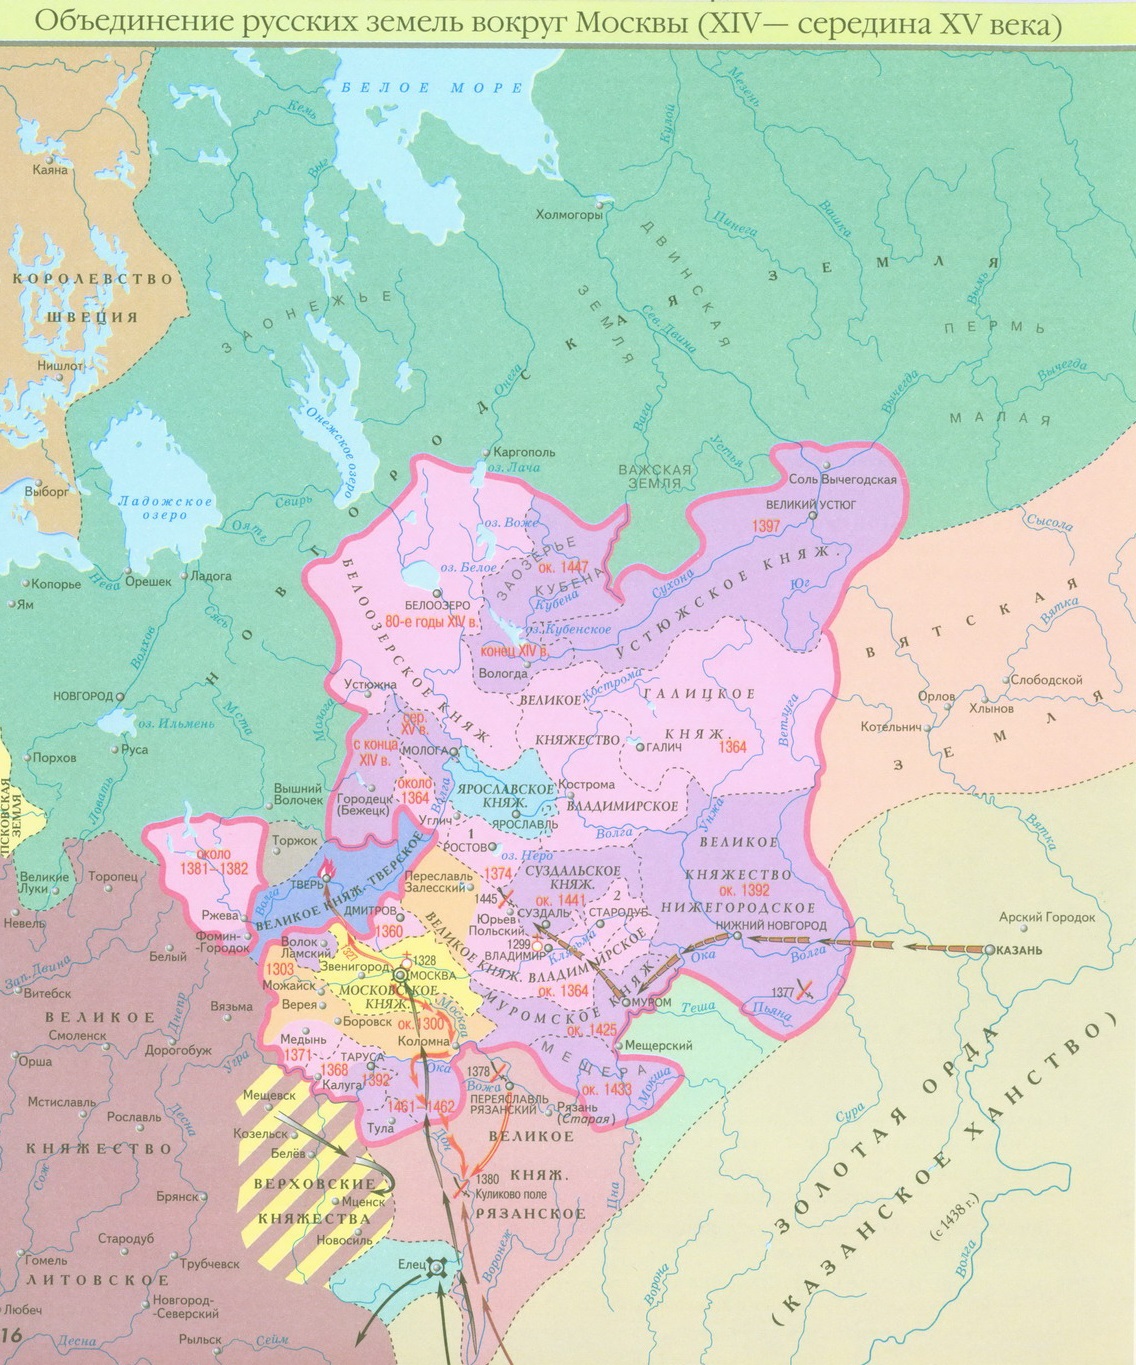 Объединение русских земель вокруг Москвы до Куликовской битвы - узнать подробности на сайте kulikovskayabitva.ru